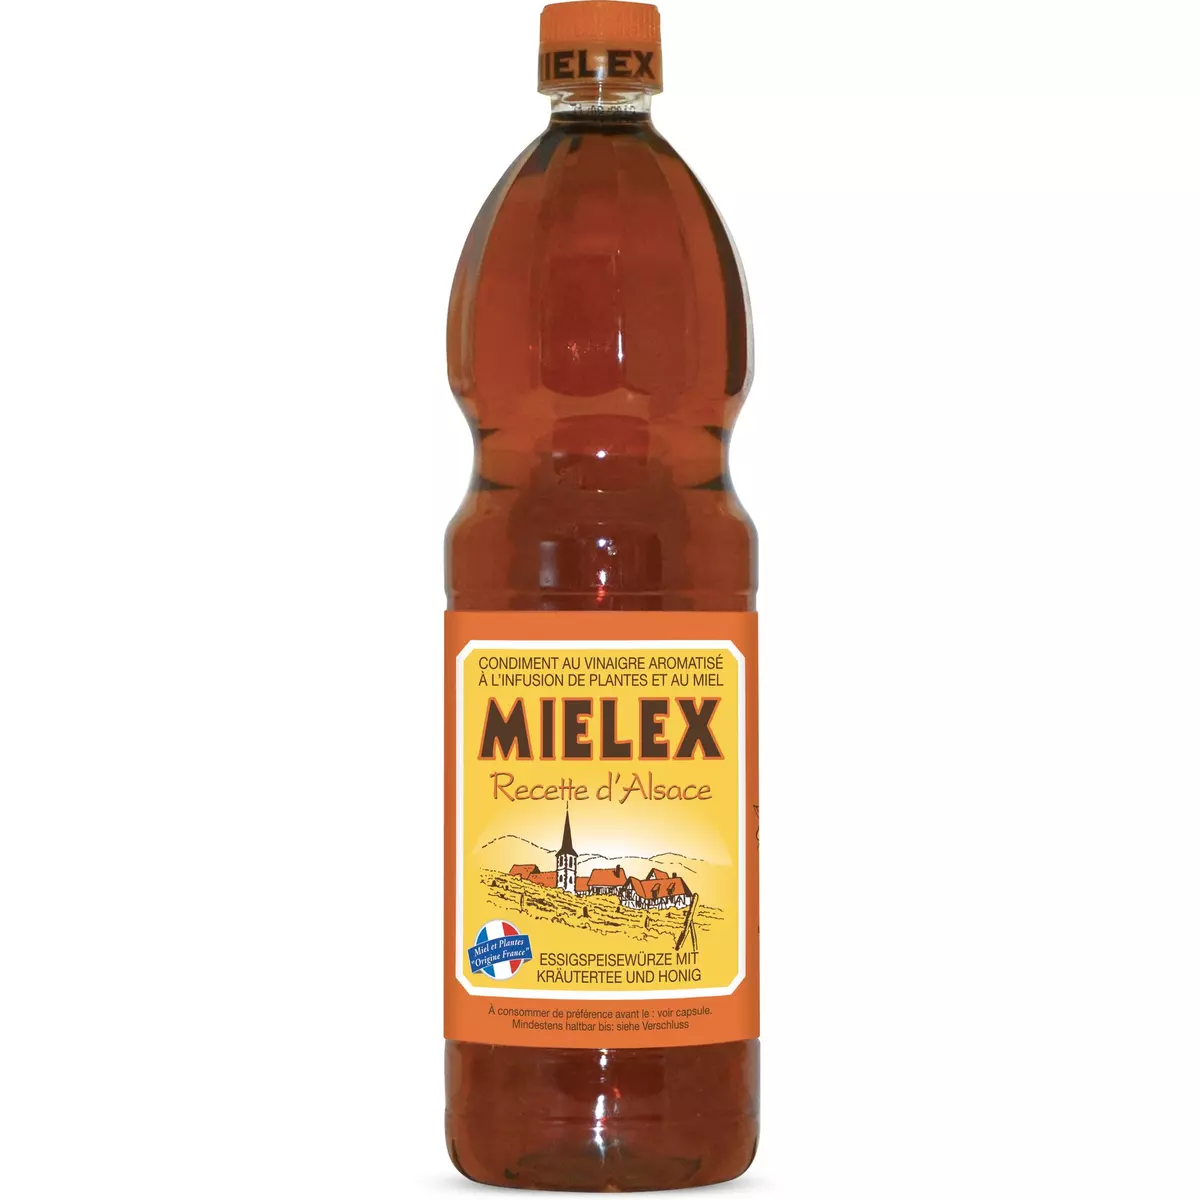 MIELEX Condiment au vinaigre aromatisé aux plantes d'Alsace 1l